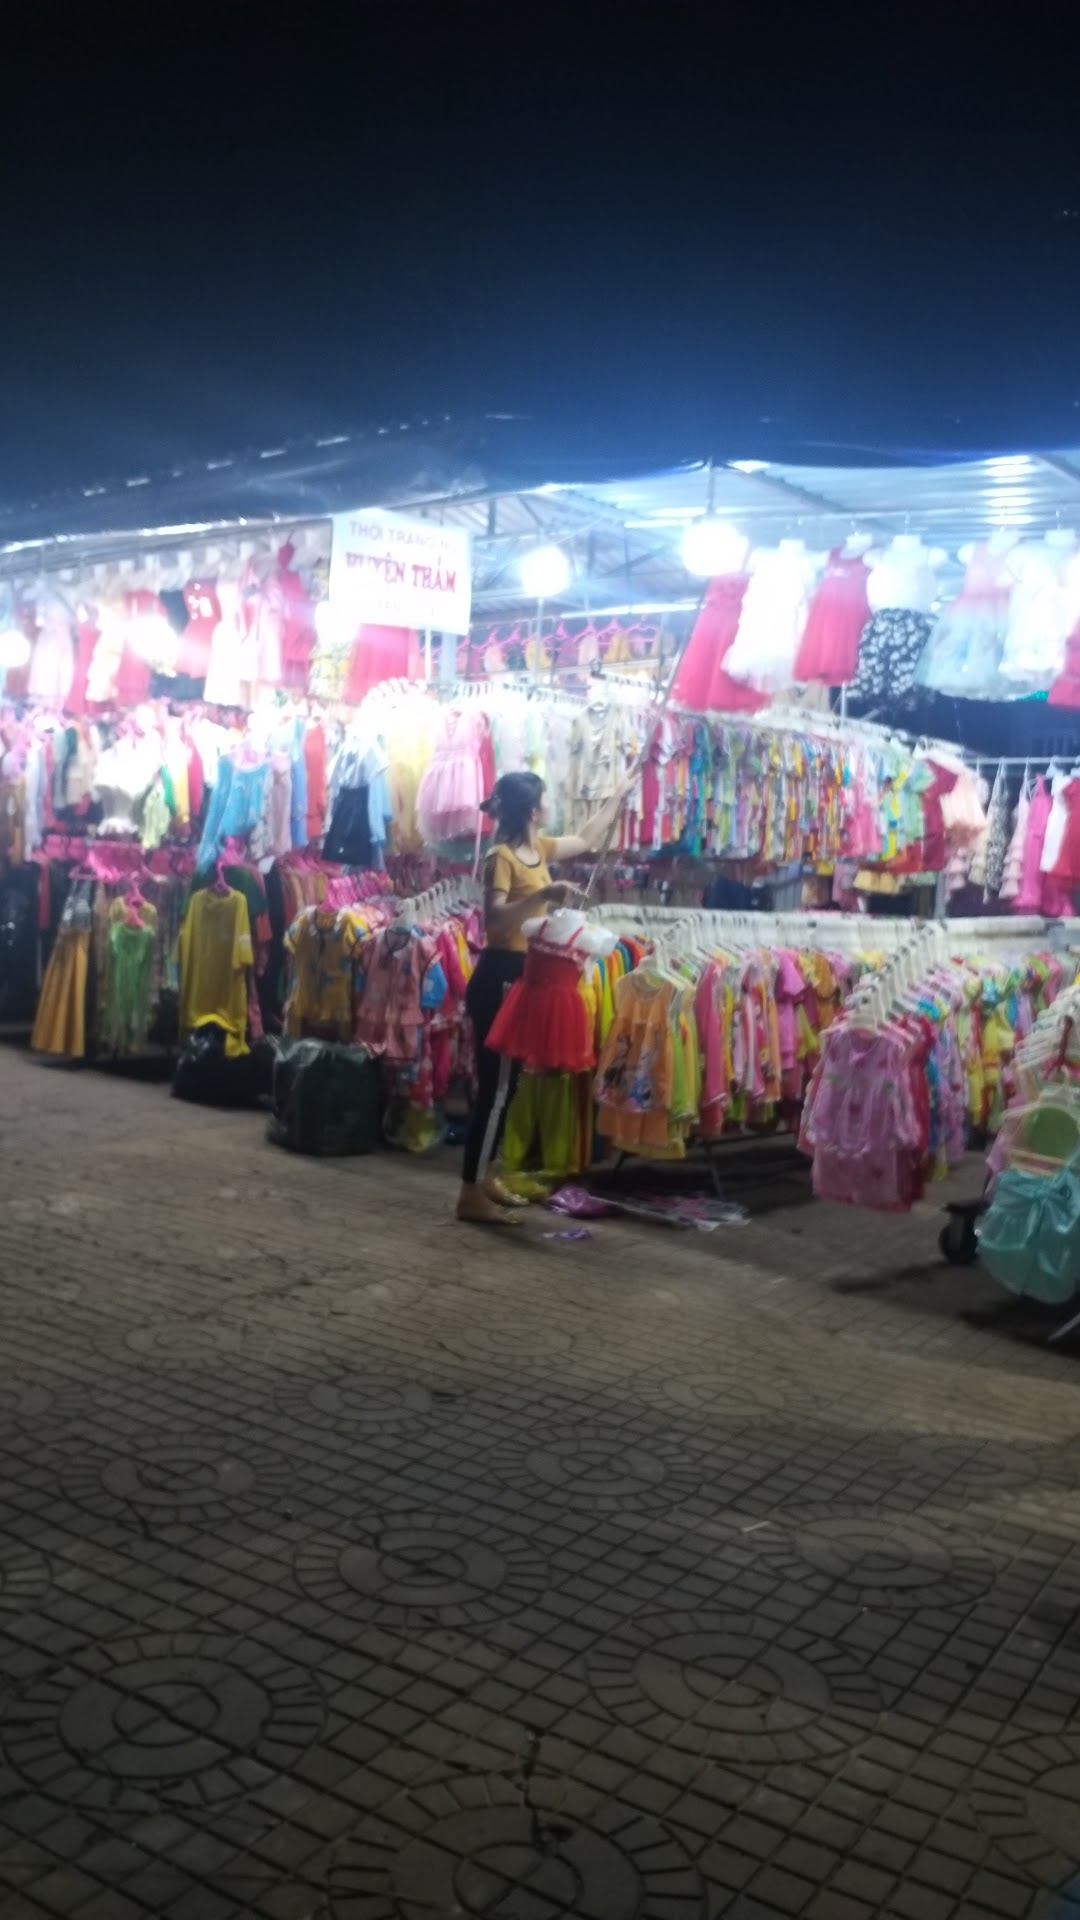 Chợ Đêm Vị Thanh